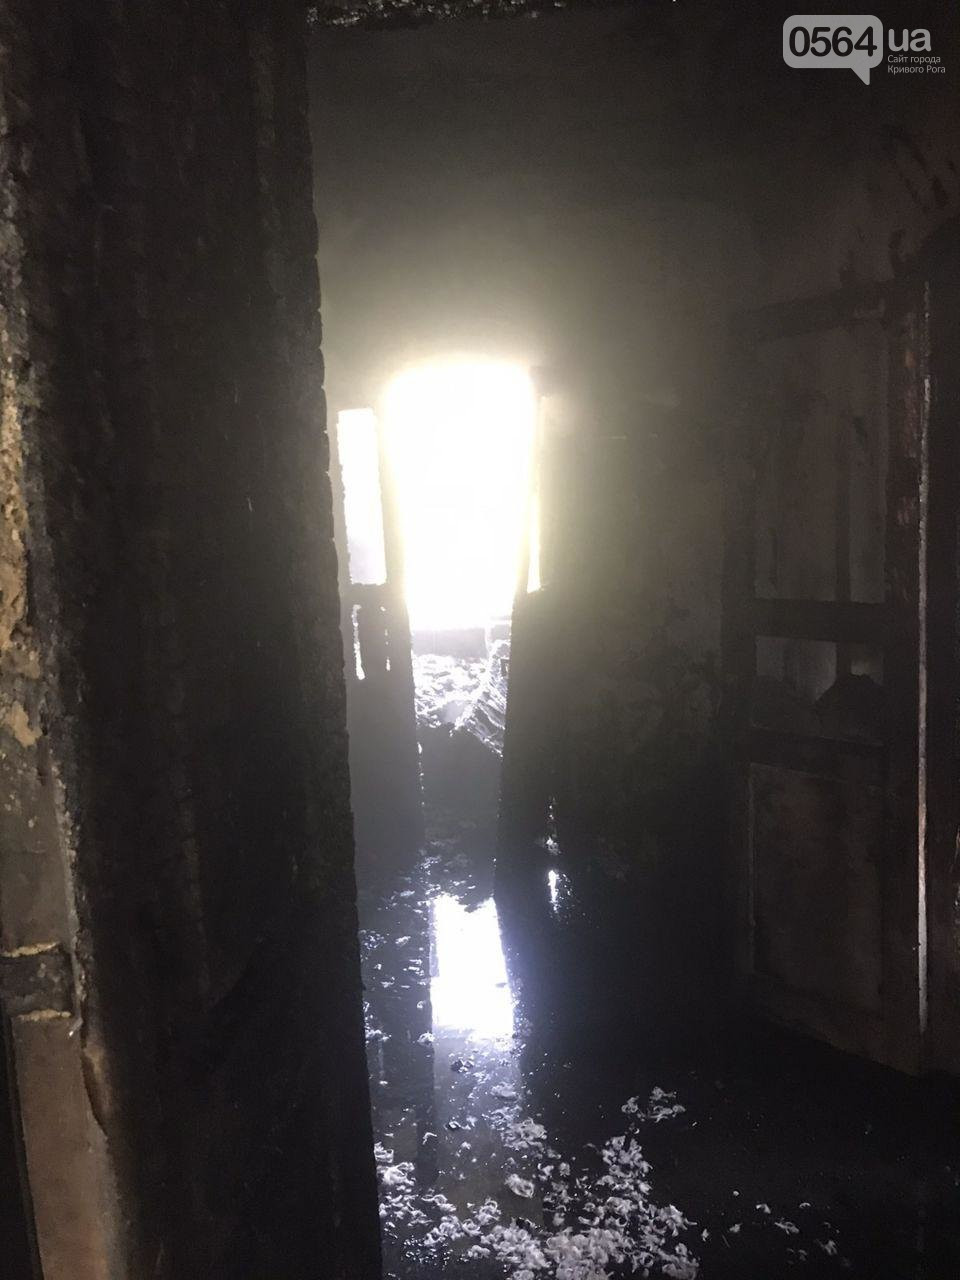 Из горящего дома криворожские спасатели эвакуировали 89-летнюю женщину